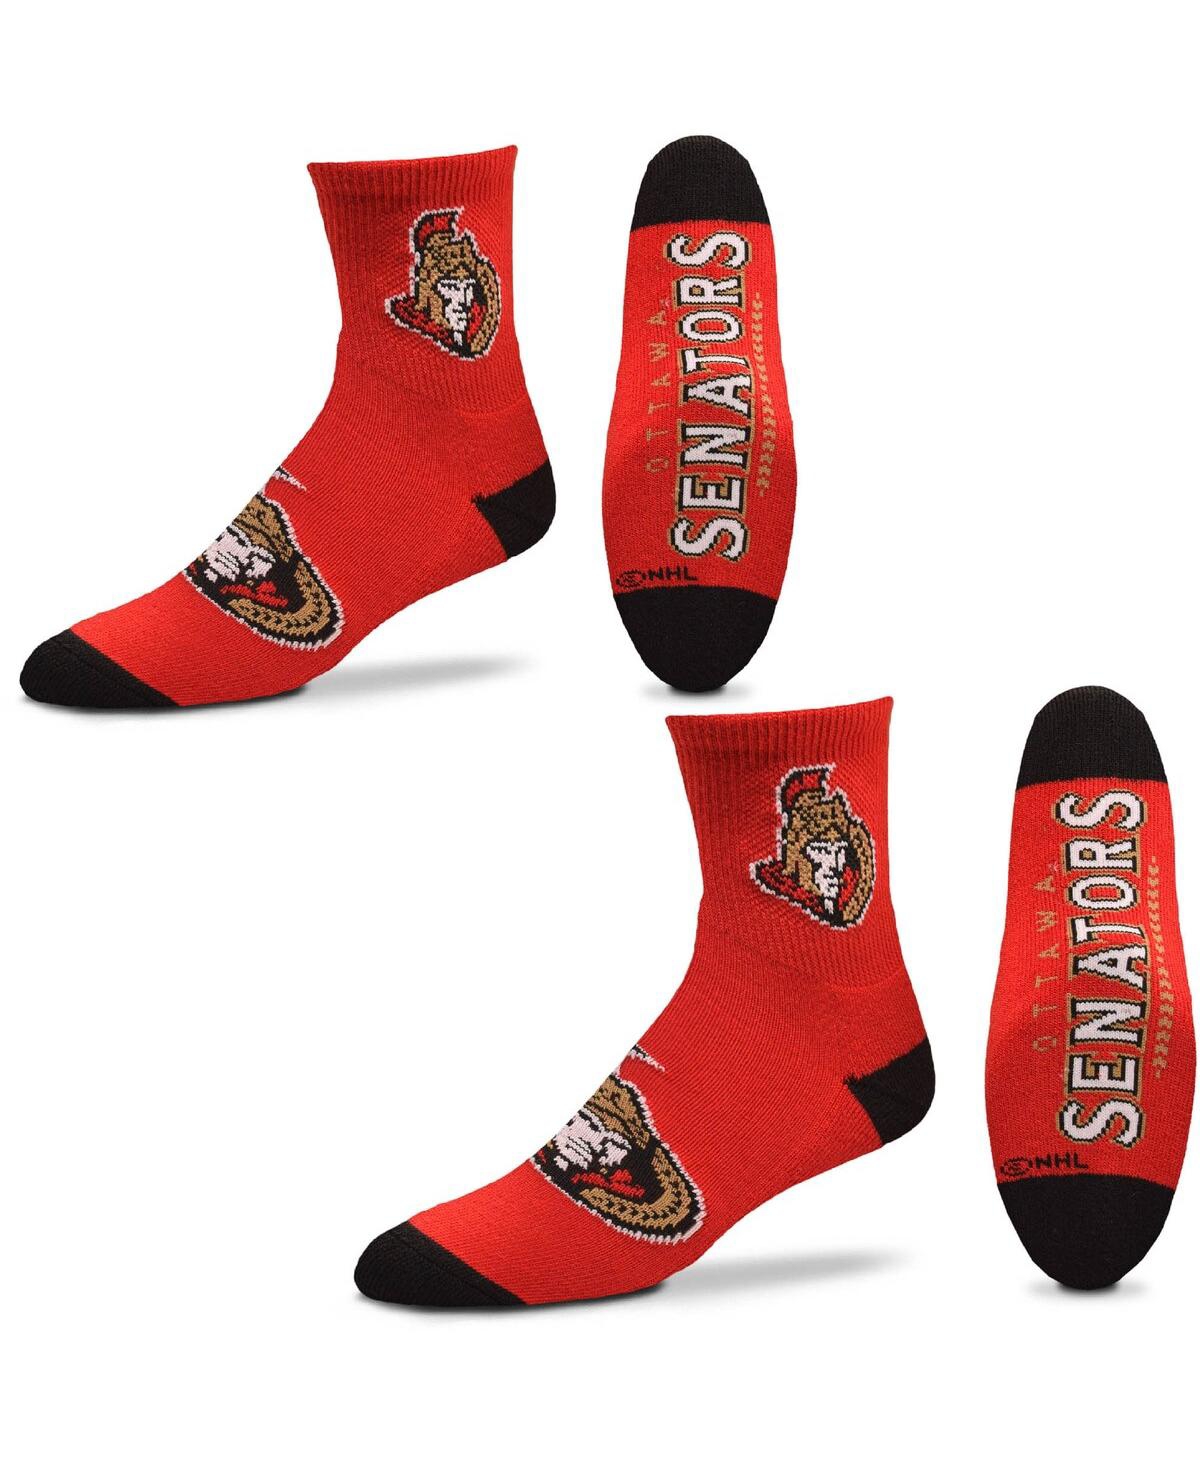 Women's For Bare Feet Ottawa Senators Quarter-Length Socks Two-Pack Set - Red